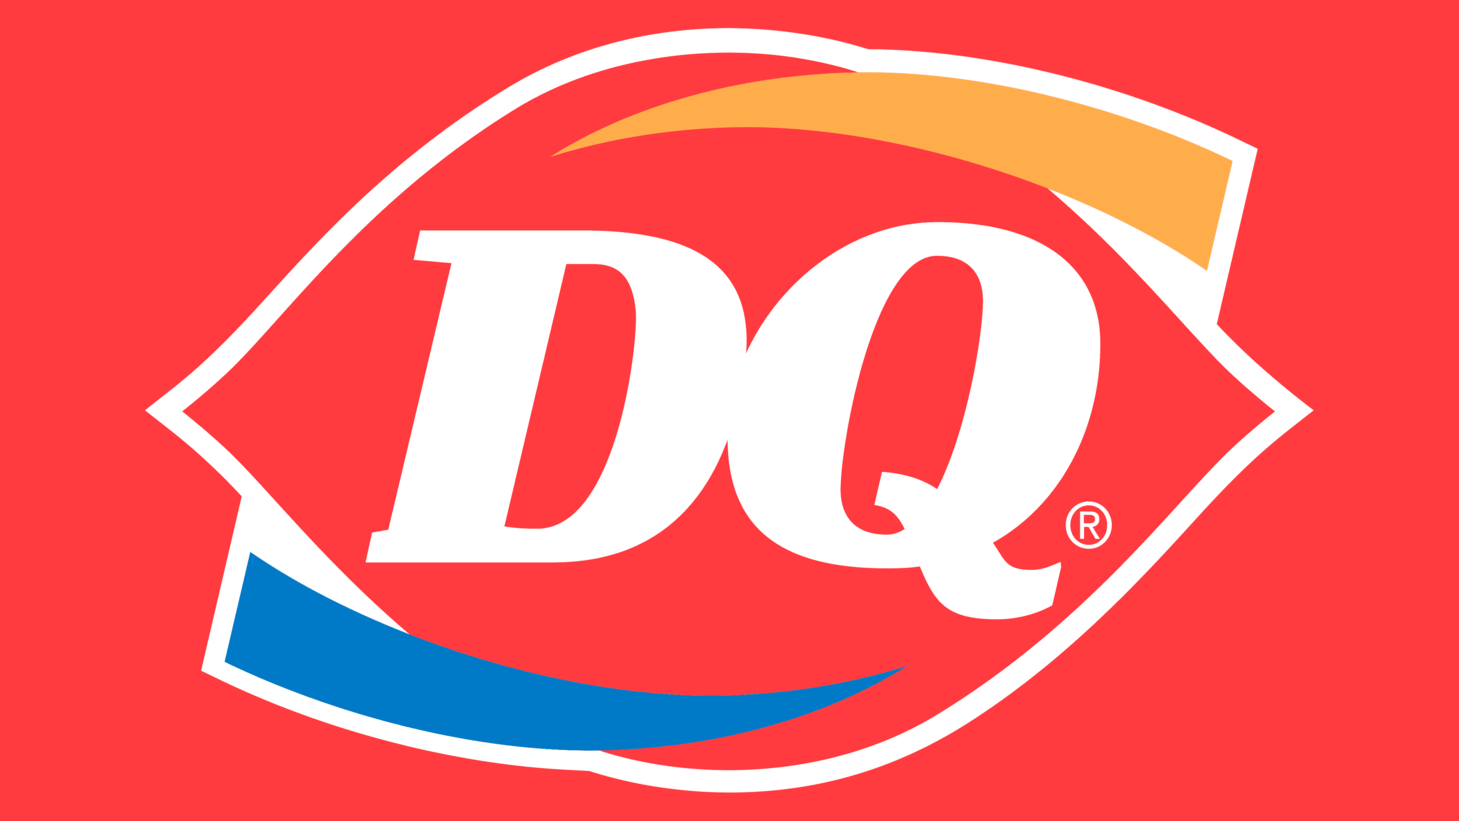 Dairy queen logo